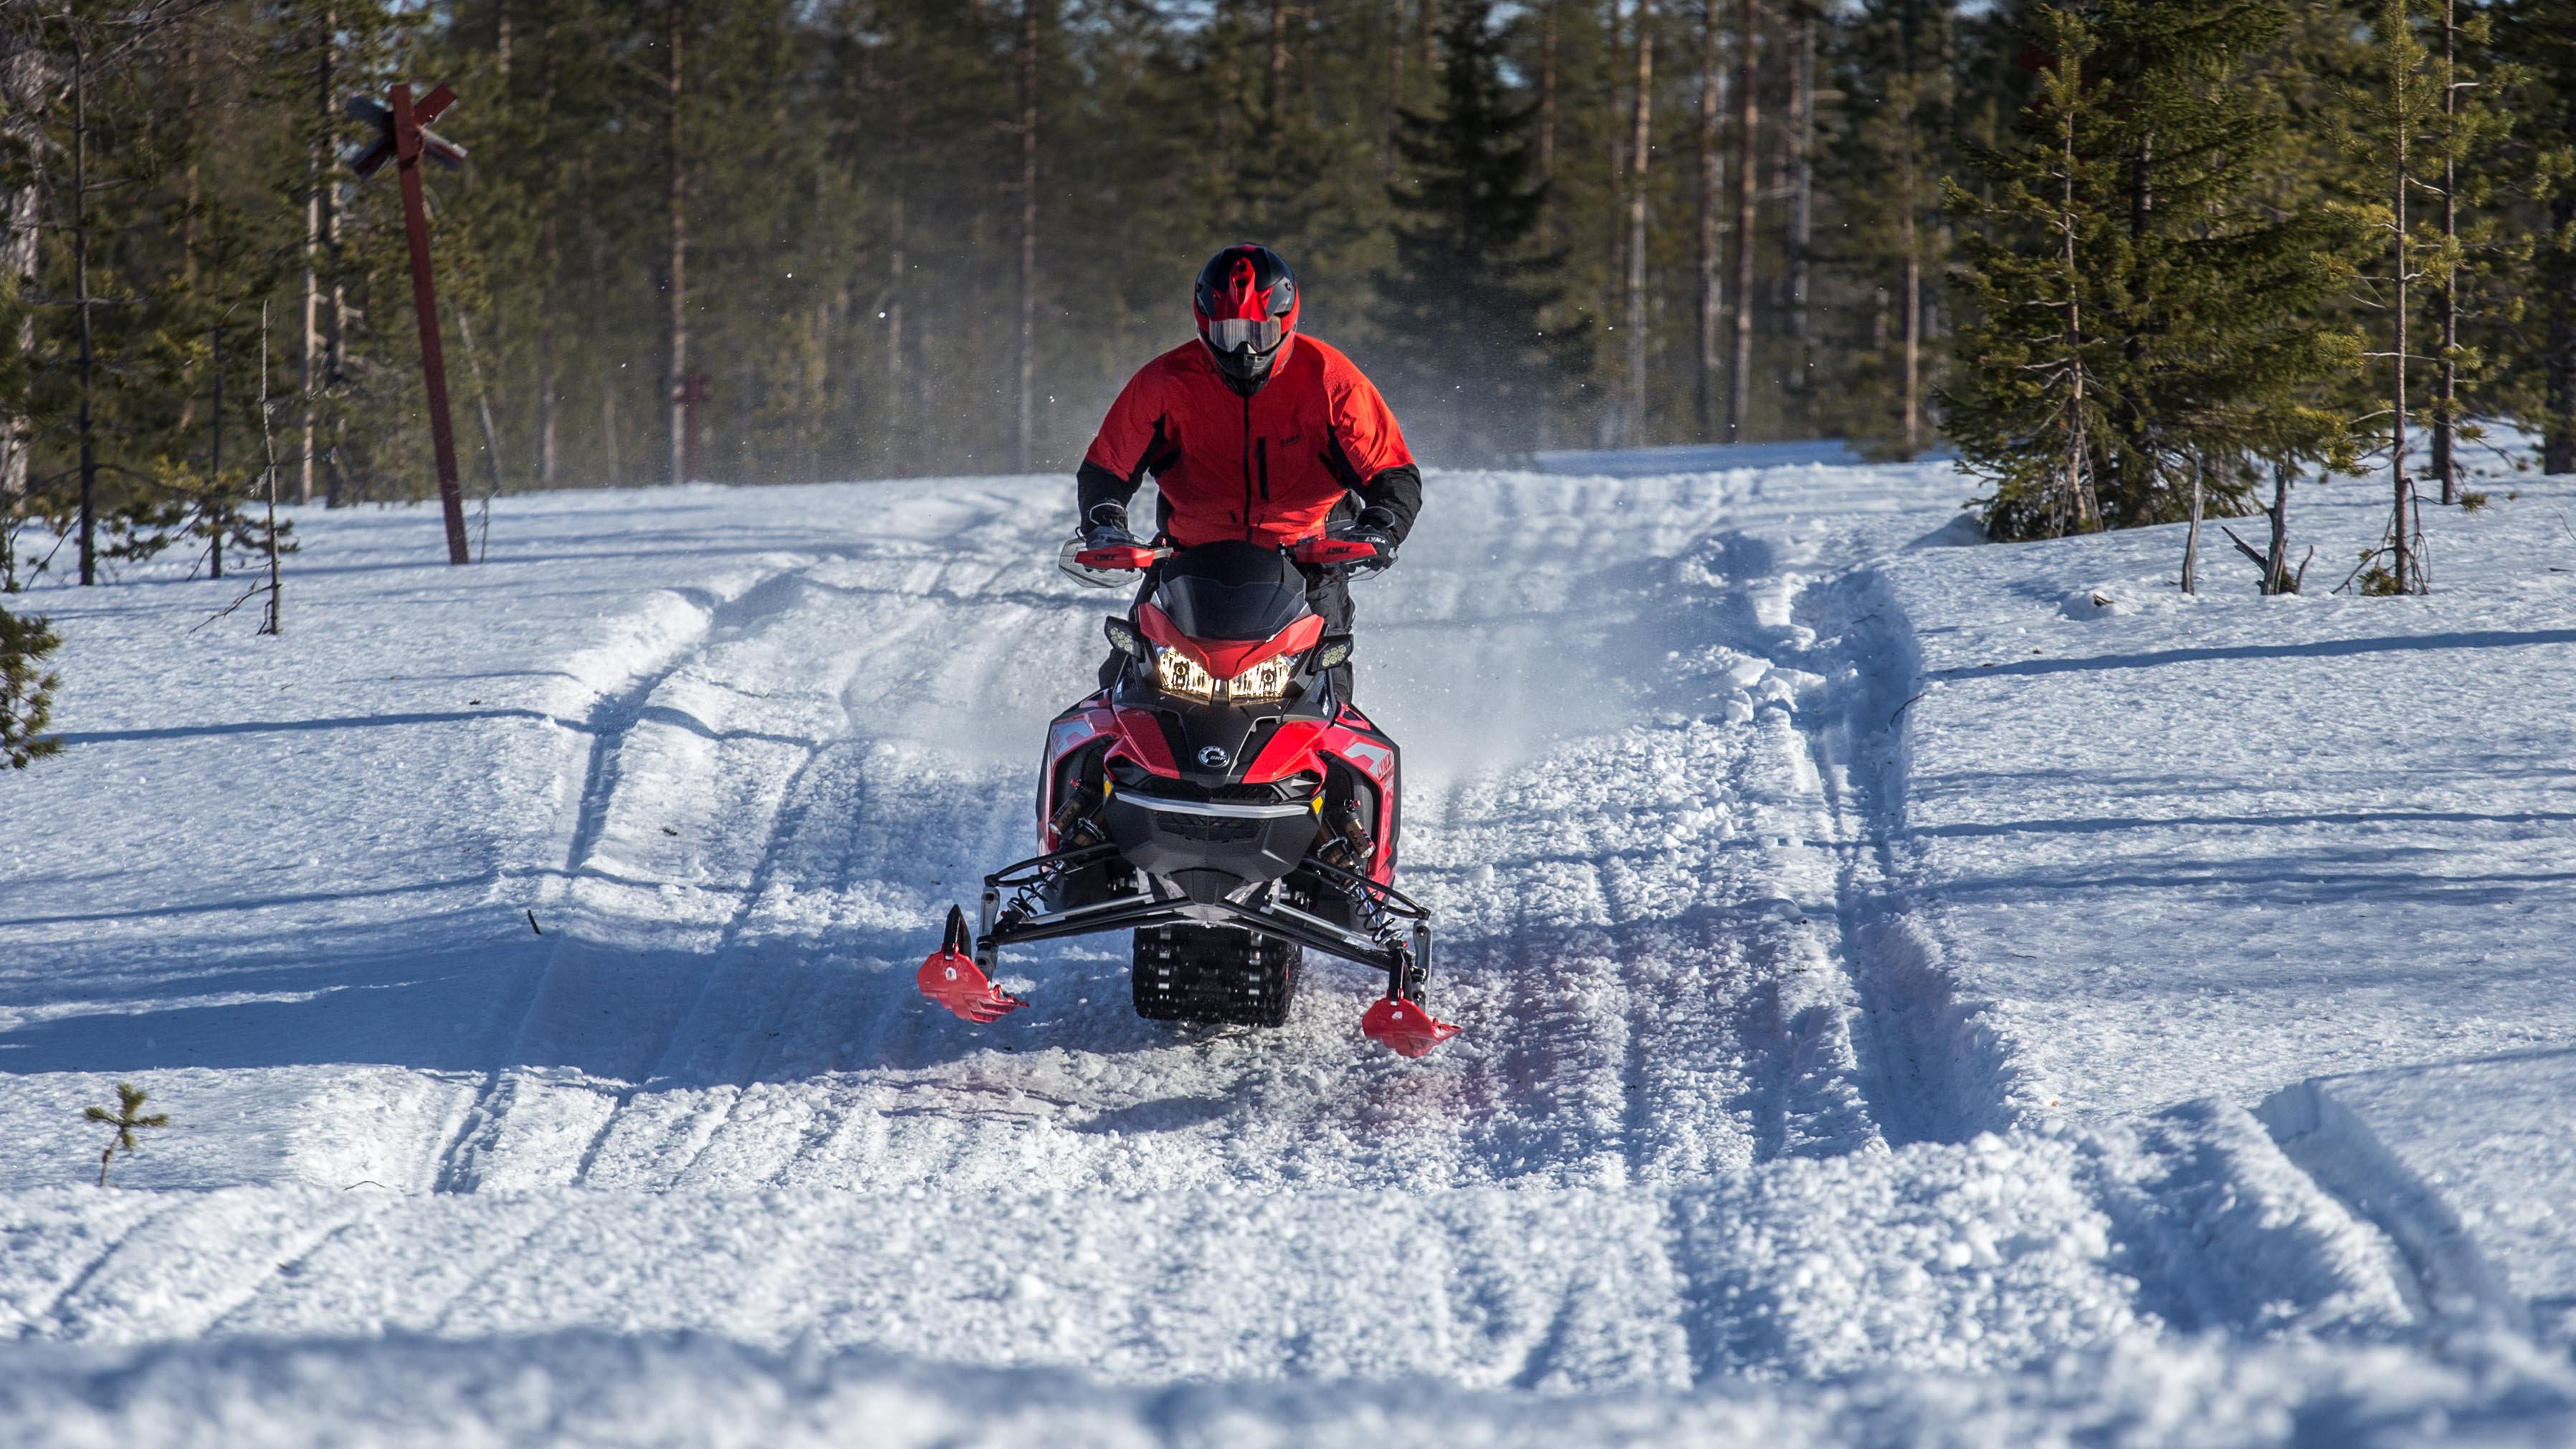 Jalkapalloilija Sami Hyypiä ajamassa Lynx-moottorikelkalla patikkoisella reitillä